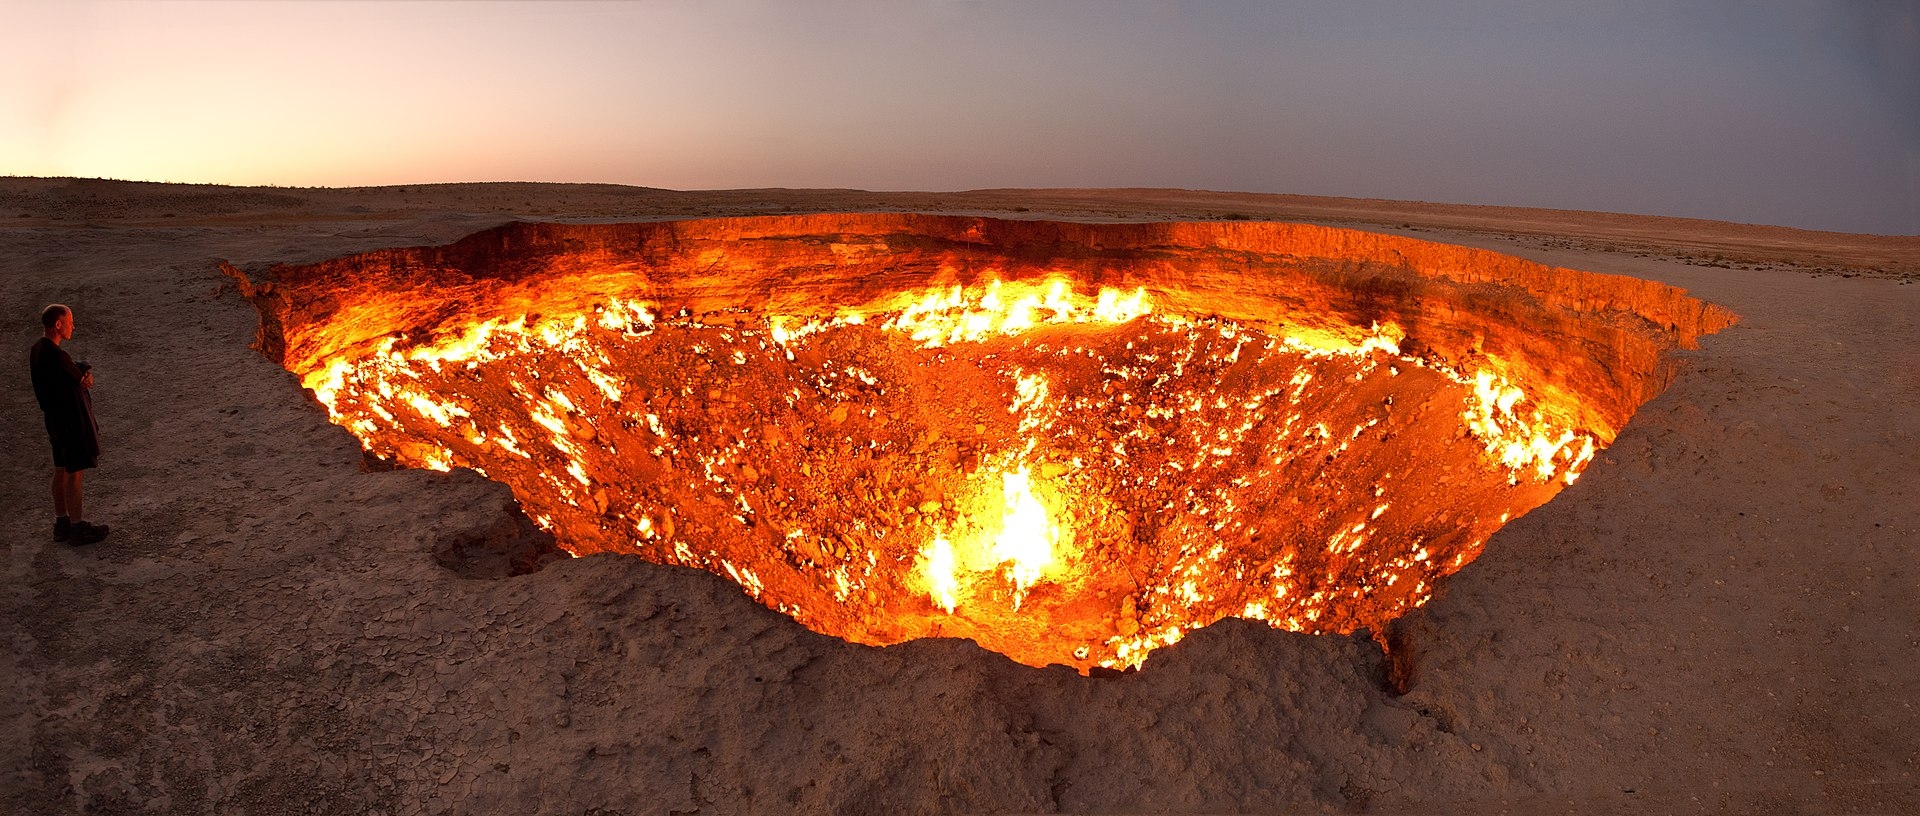 Президент Туркменистана решил потушить горящие «Врата ада»